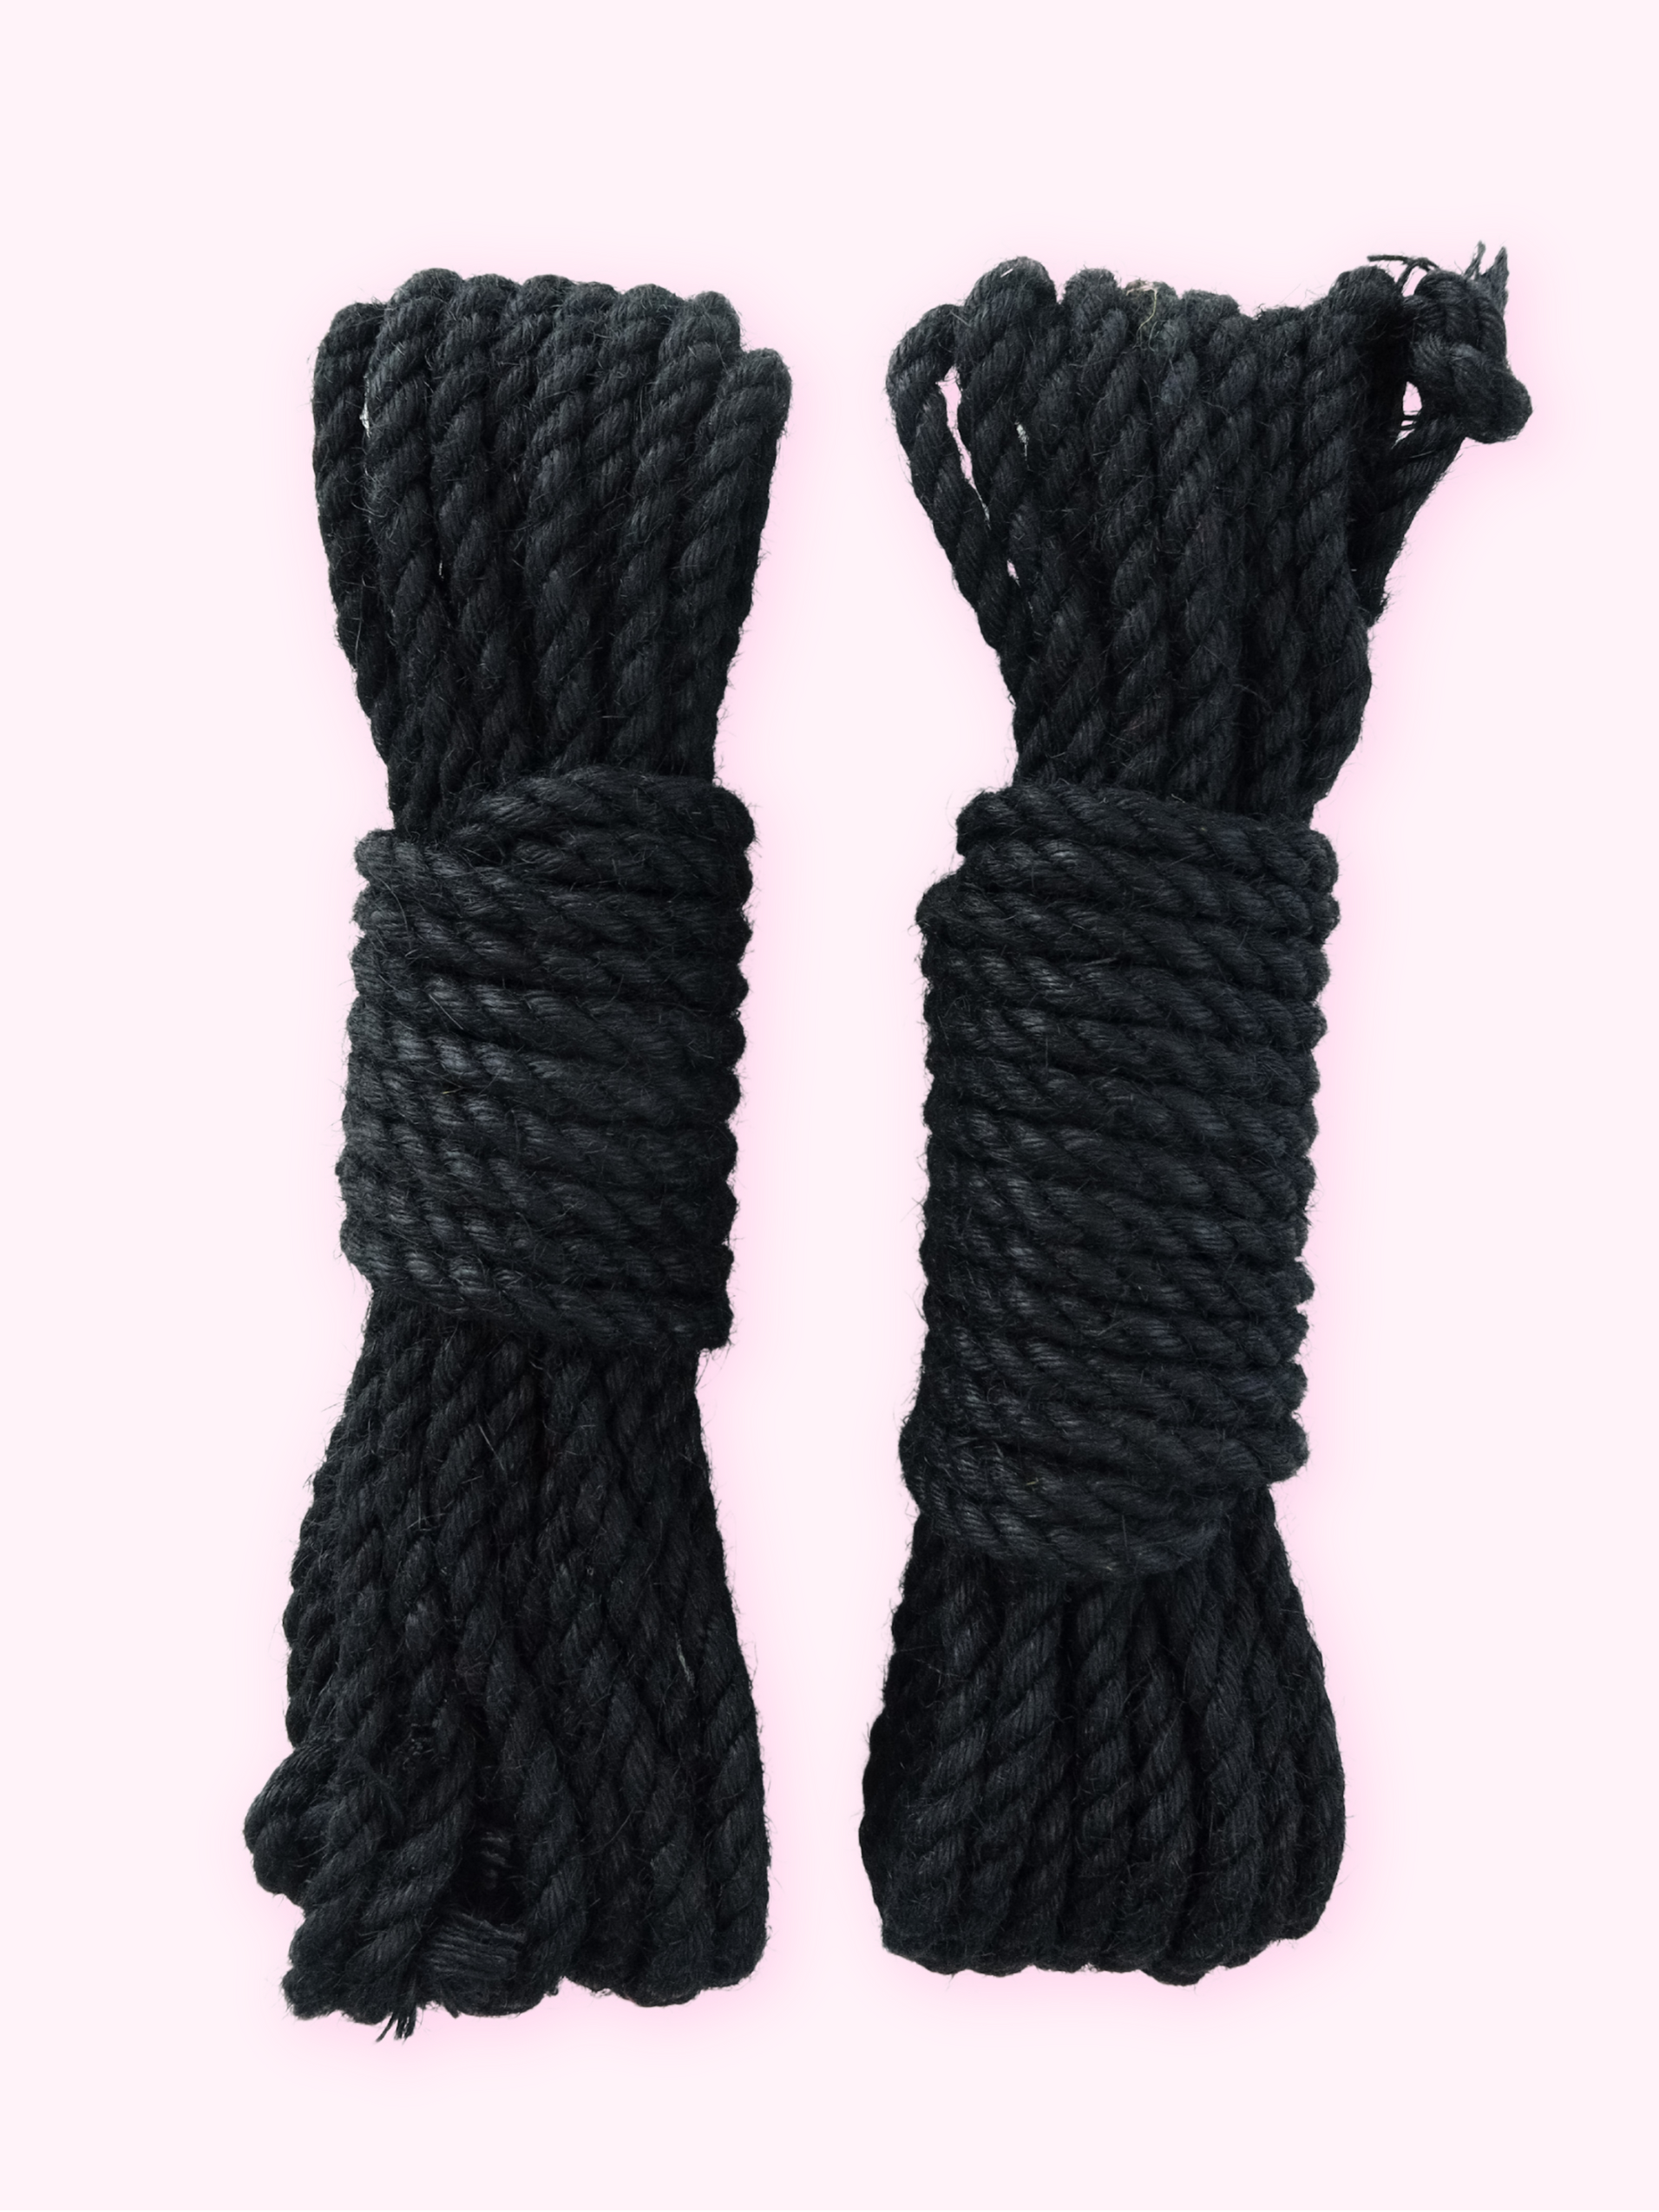 What Is Shibari? Experts Explain the Art of Japanese Rope Bondage.